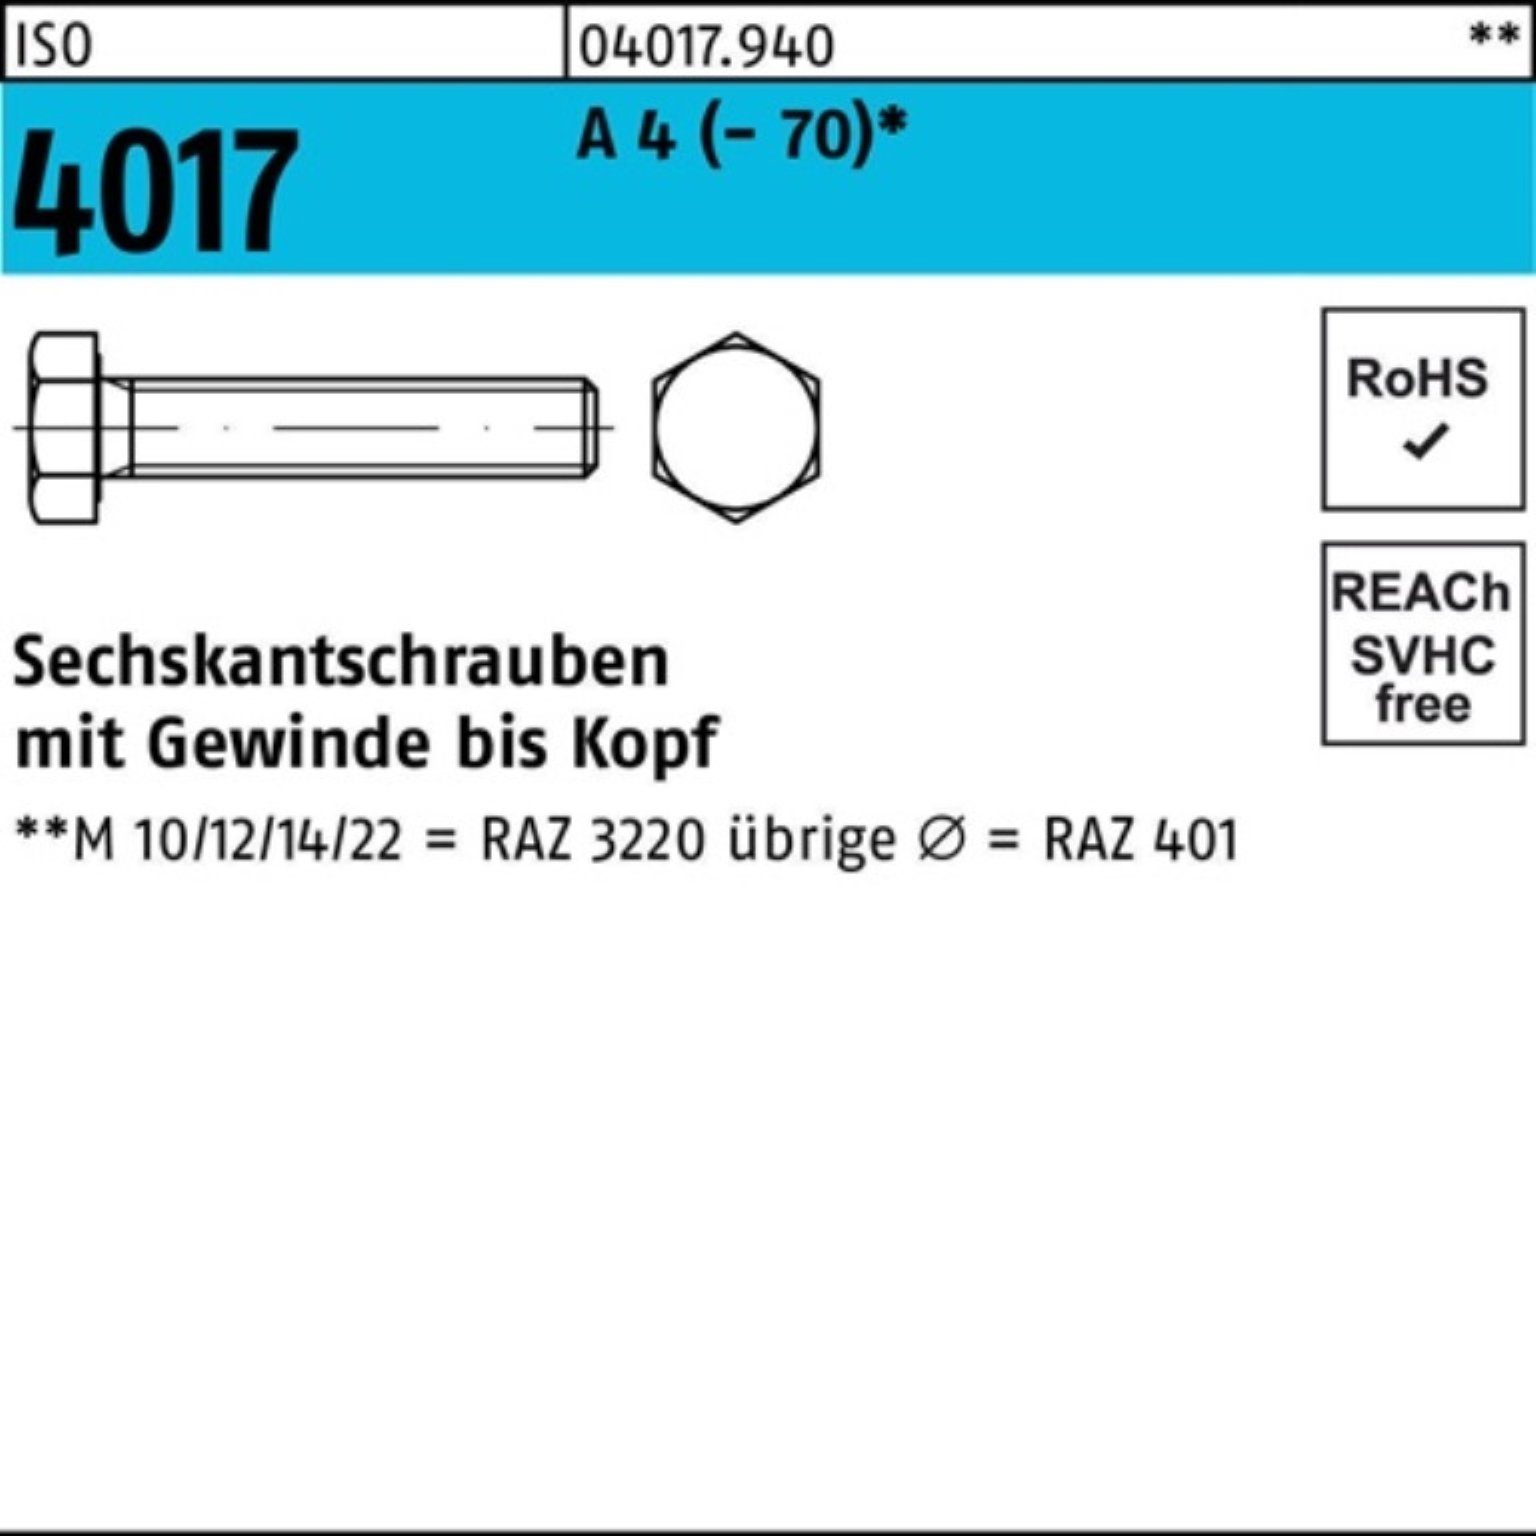 Bufab Sechskantschraube 100er Pack Sechskantschraube ISO 4017 VG M18x 70 A 4 (70) 1 Stück I